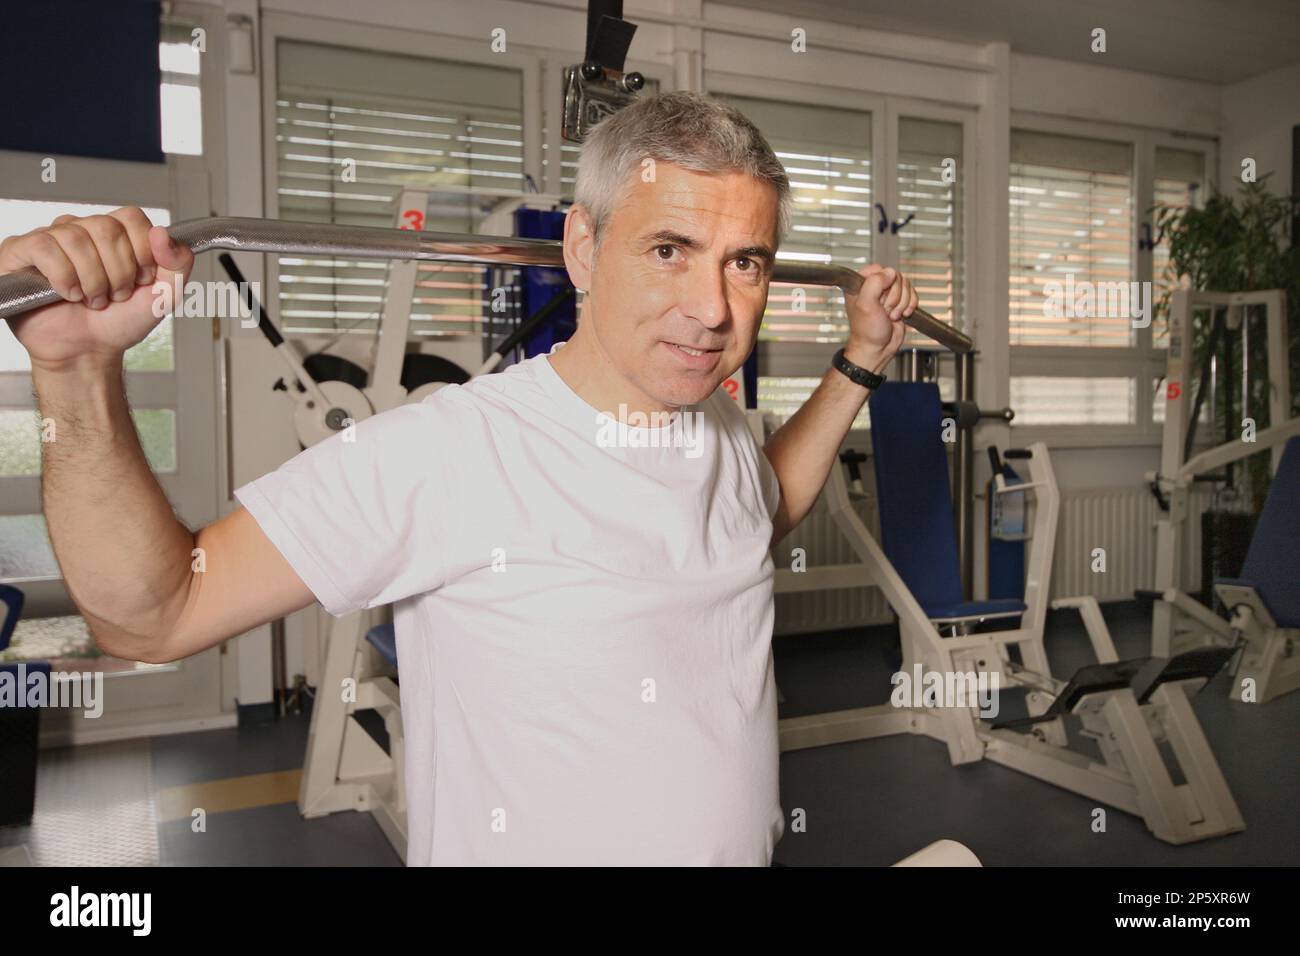 un homme âgé s'entraîne sur le pull-down de lat dans la salle de gym Banque D'Images